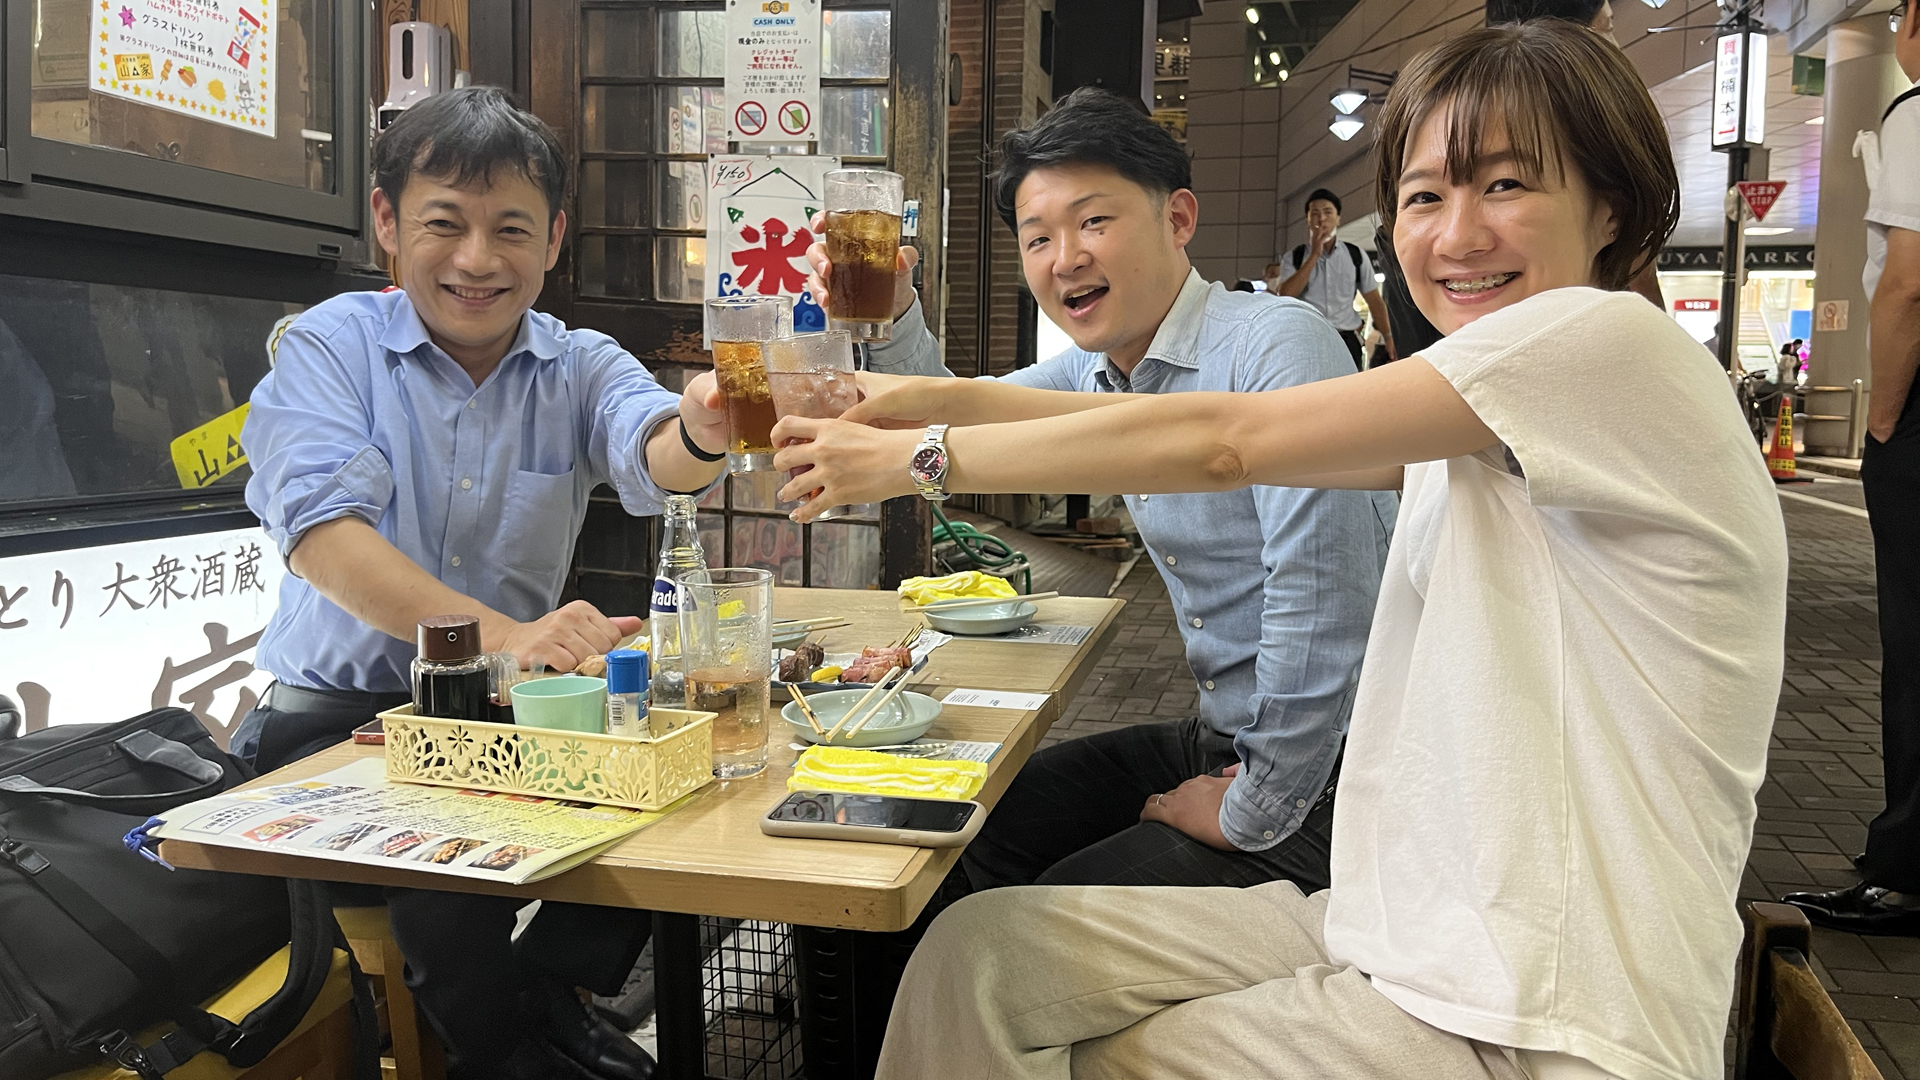 Herr Tokumoto mit seinen Angestellten beim Nomikai - einem "Trinktreffen". | Katharina von Tschurtschenthaler